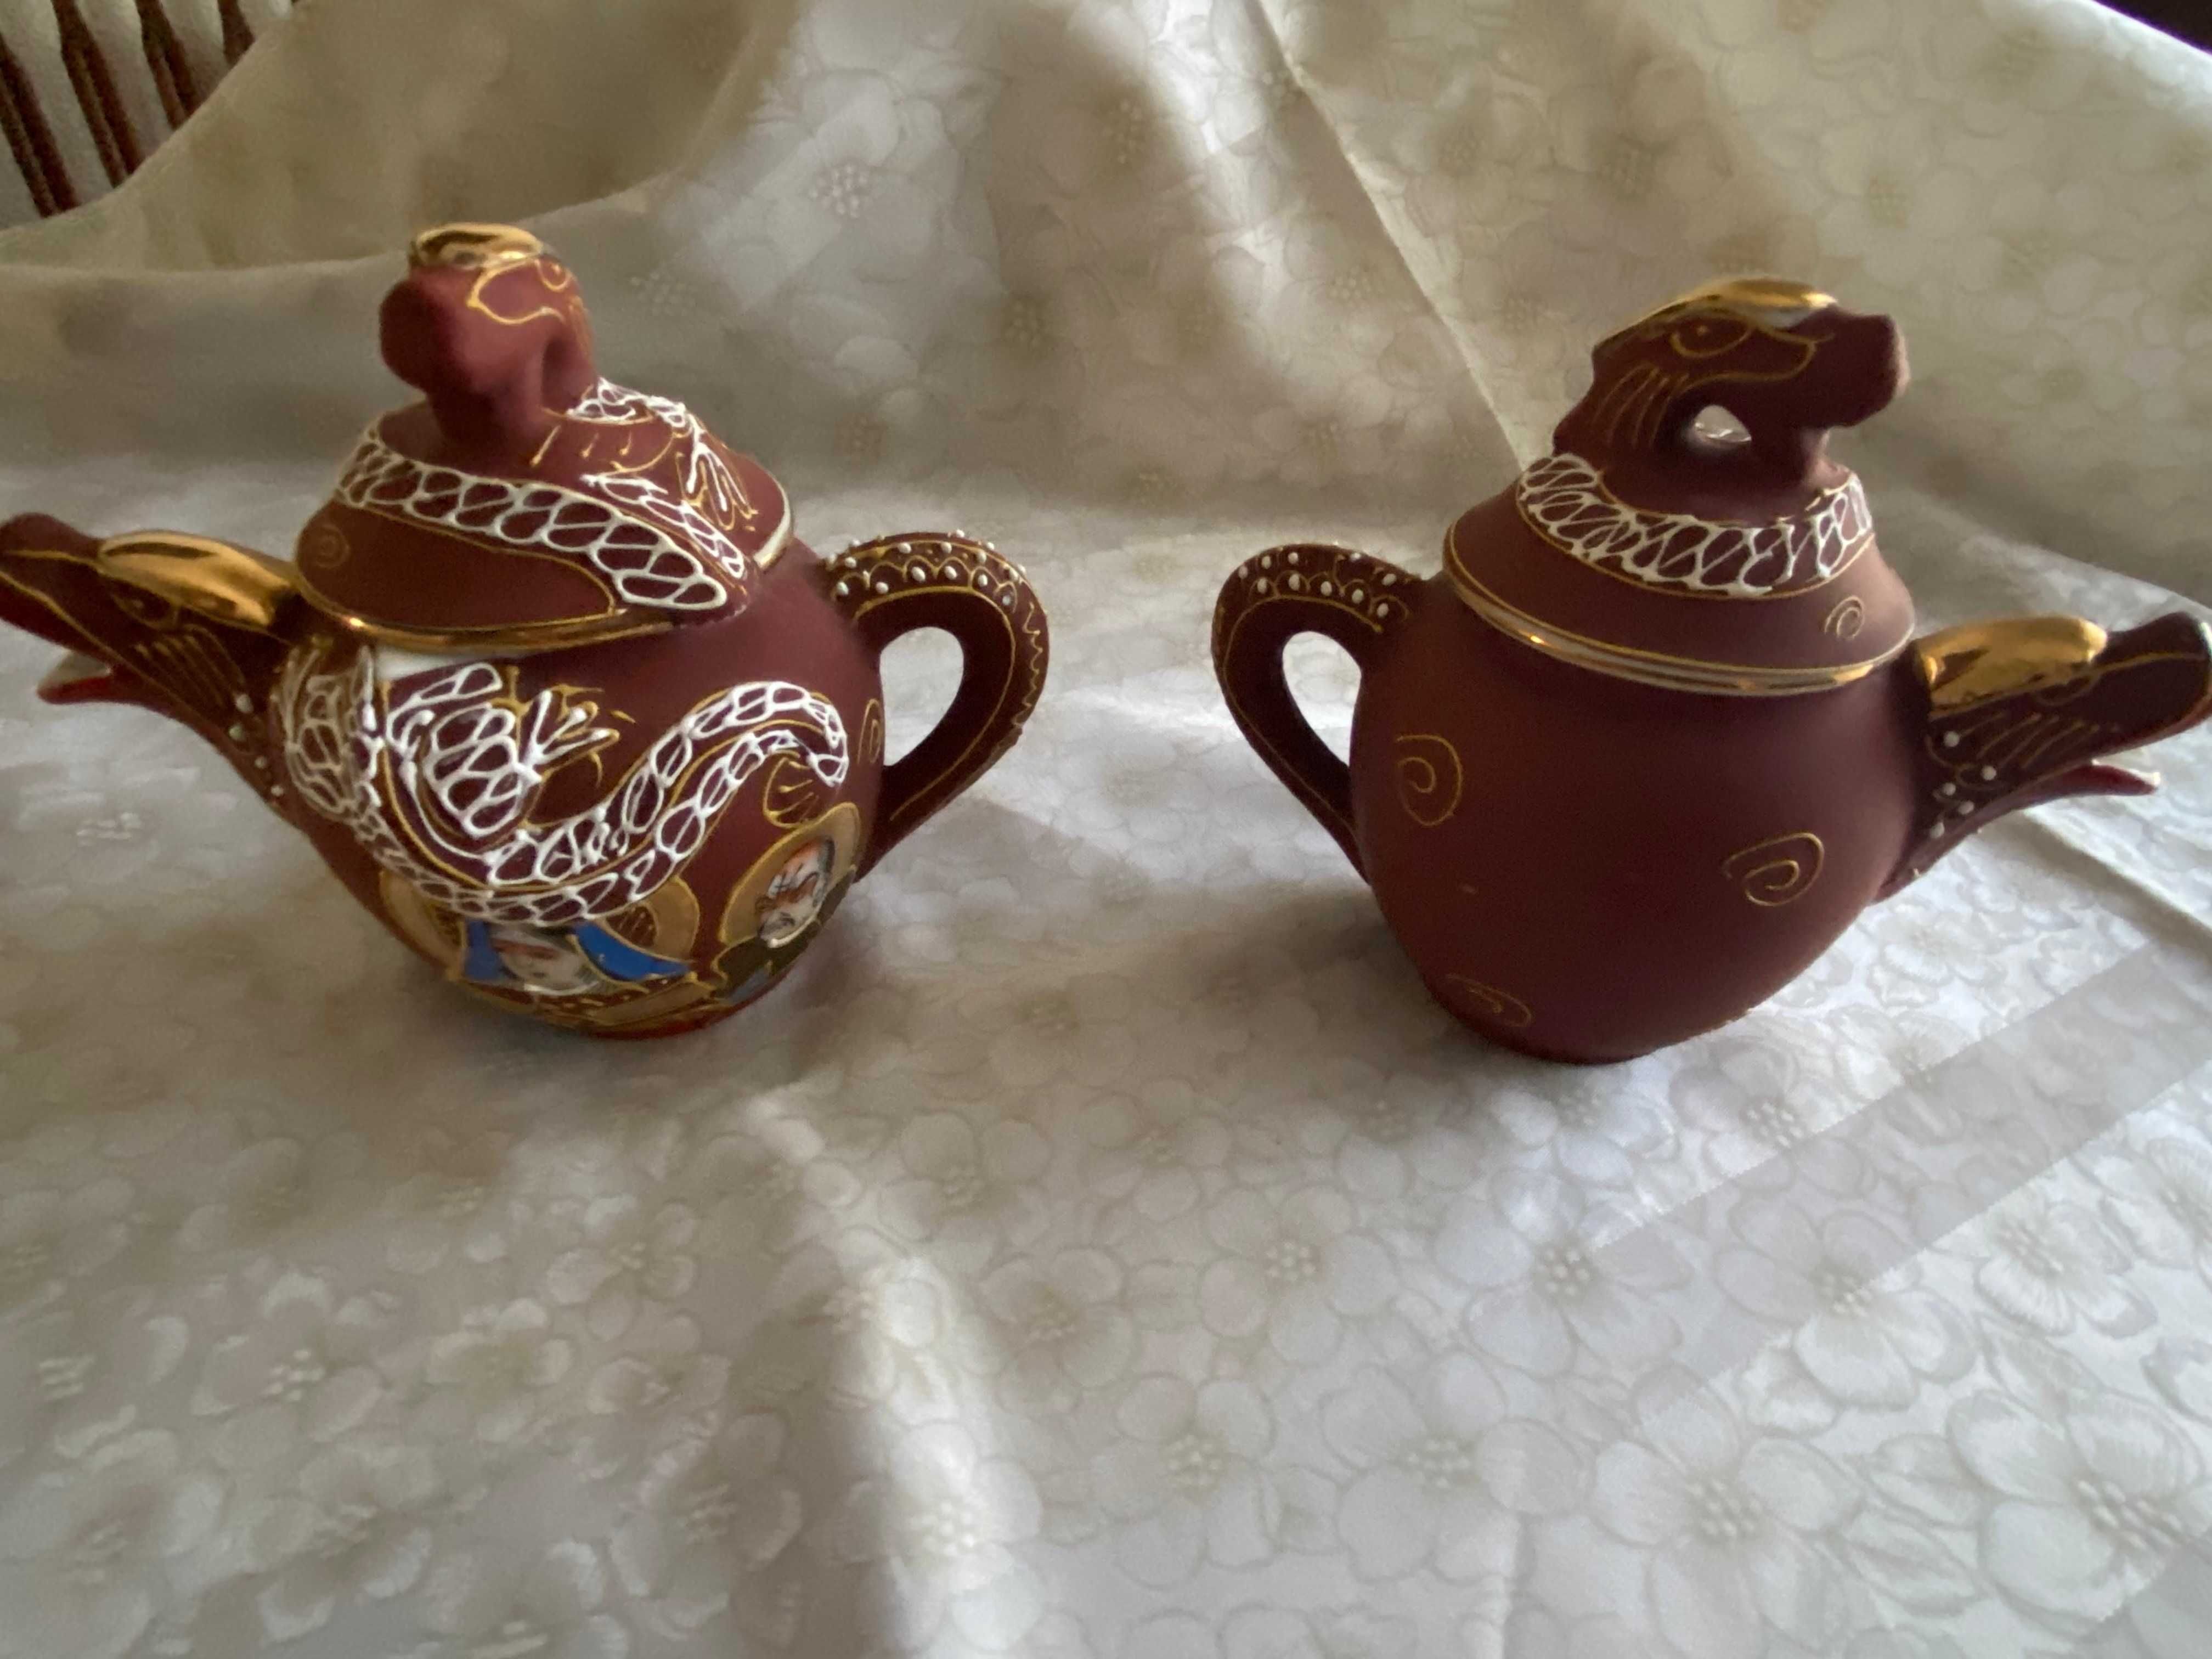 Procura café, Japão e motivos tradicionais pintados à mão?